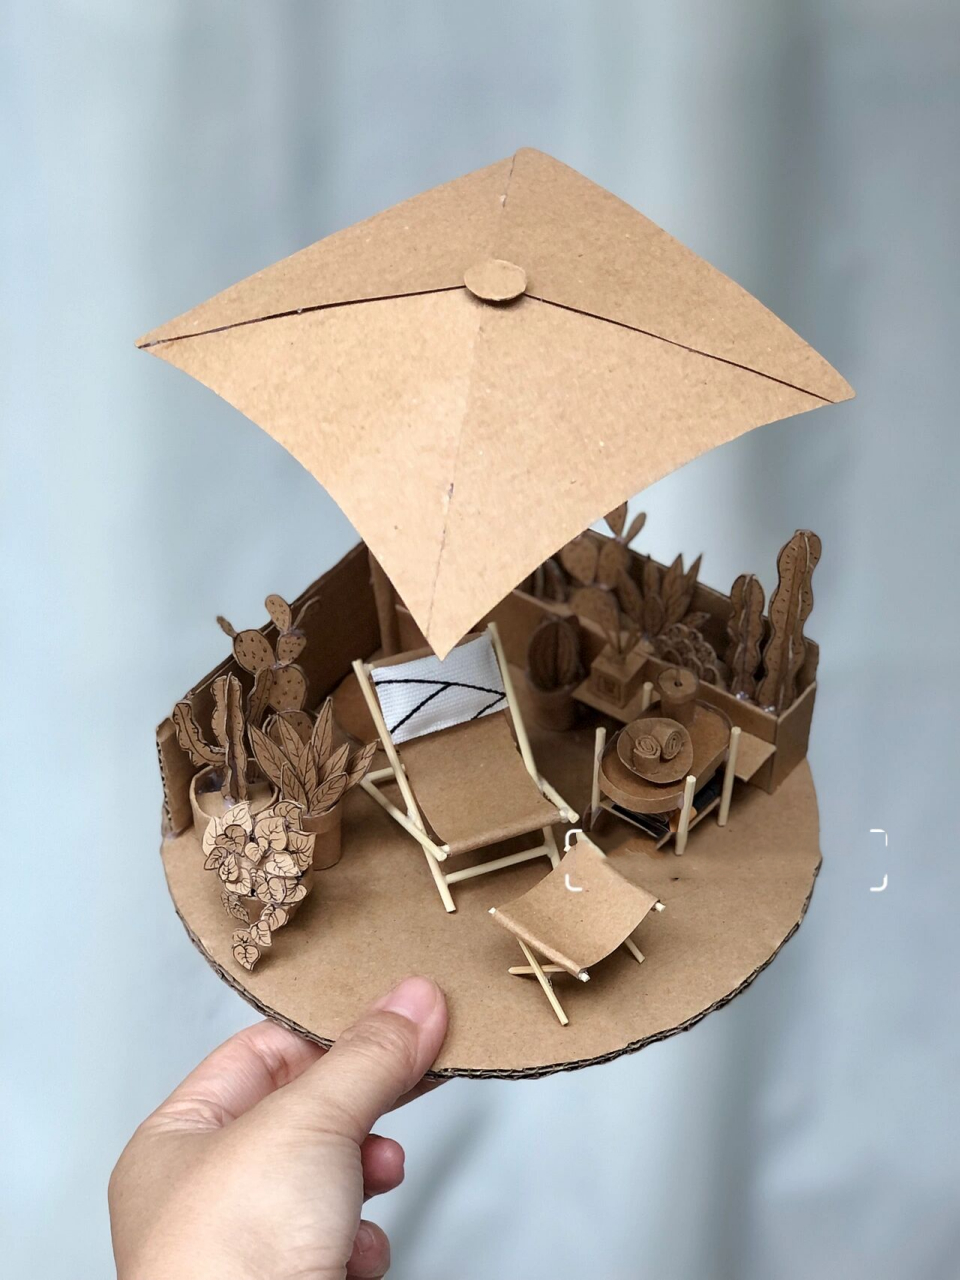 创意手工diy废纸箱制作小房子—露台 小房子的第六部分,露台做好了!